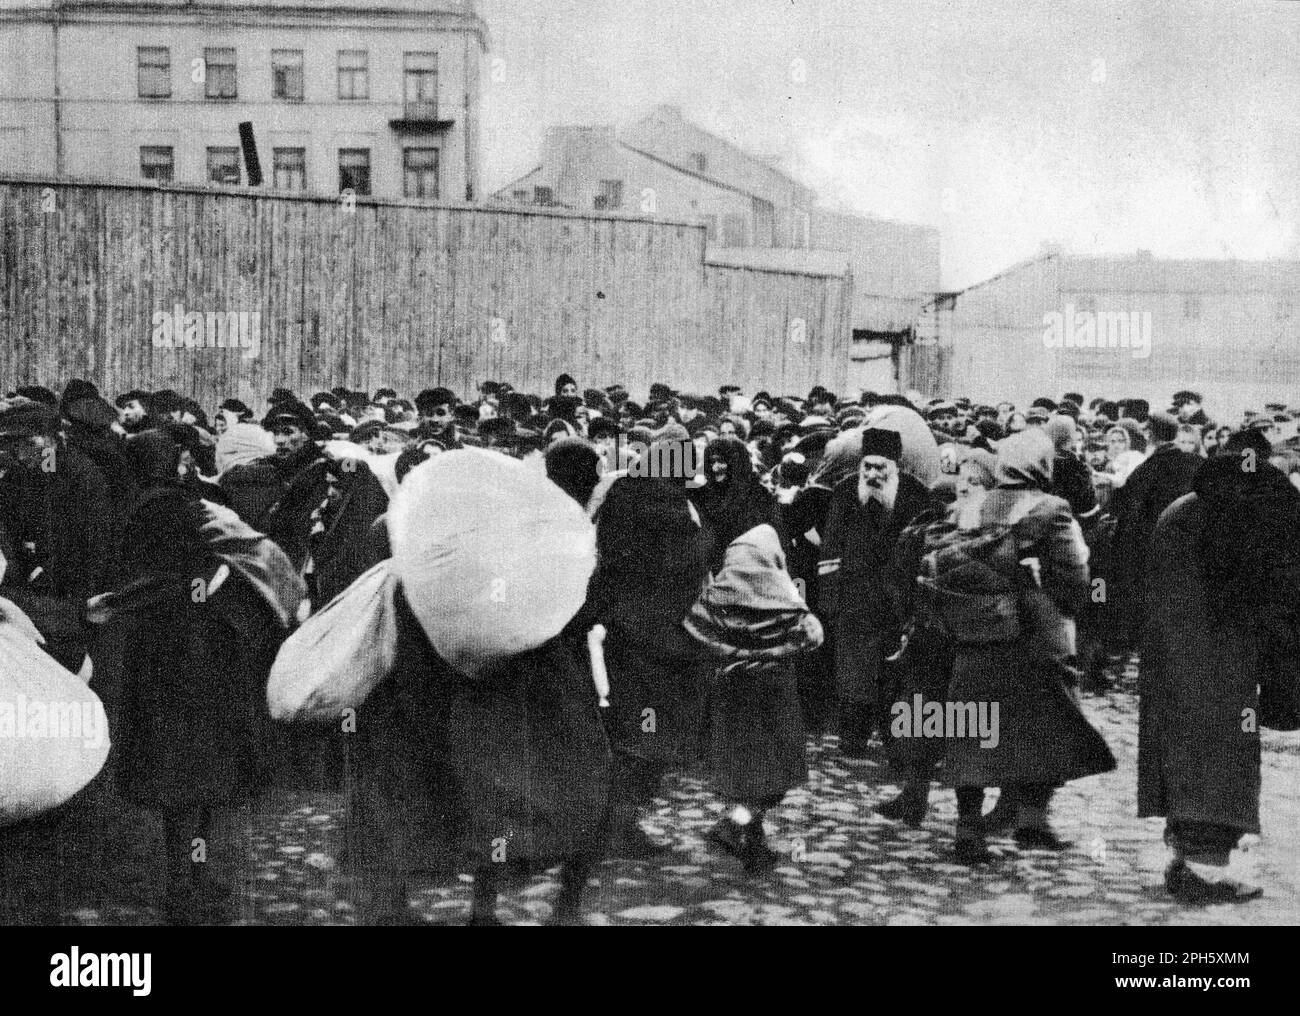 Deportation von Juden nach Bełżec von Zamość, April 1942. Belzec war ein Vernichtungszentrum, erbaut, um die Juden von Lublin und Lwow zu ermorden. Etwa 450.000 Menschen wurden dort getötet, bevor es 1943 geschlossen und ausgerottet wurde. Es gibt nur sehr wenige Fotos davon, da die Operation geheim war und geschlossen wurde, bevor die Verbündeten kamen, so dass es keine Bilder nach der Befreiung gibt, wie wir sie aus Dachau und Auschwitz sehen. Nur 7 Menschen überlebten Belzec. Stockfoto